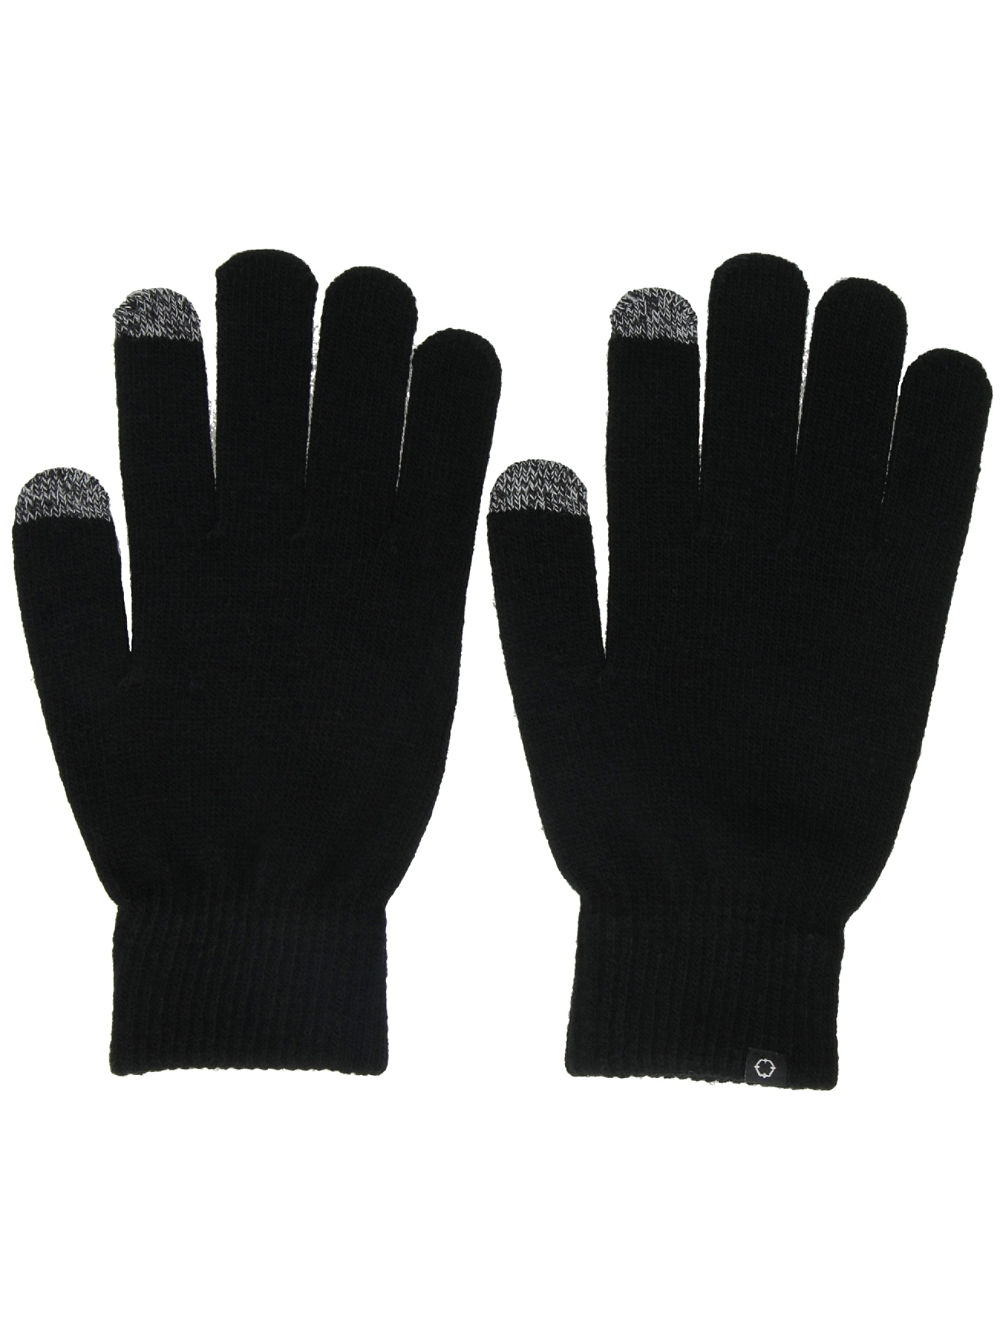 Techy Tachy Gloves